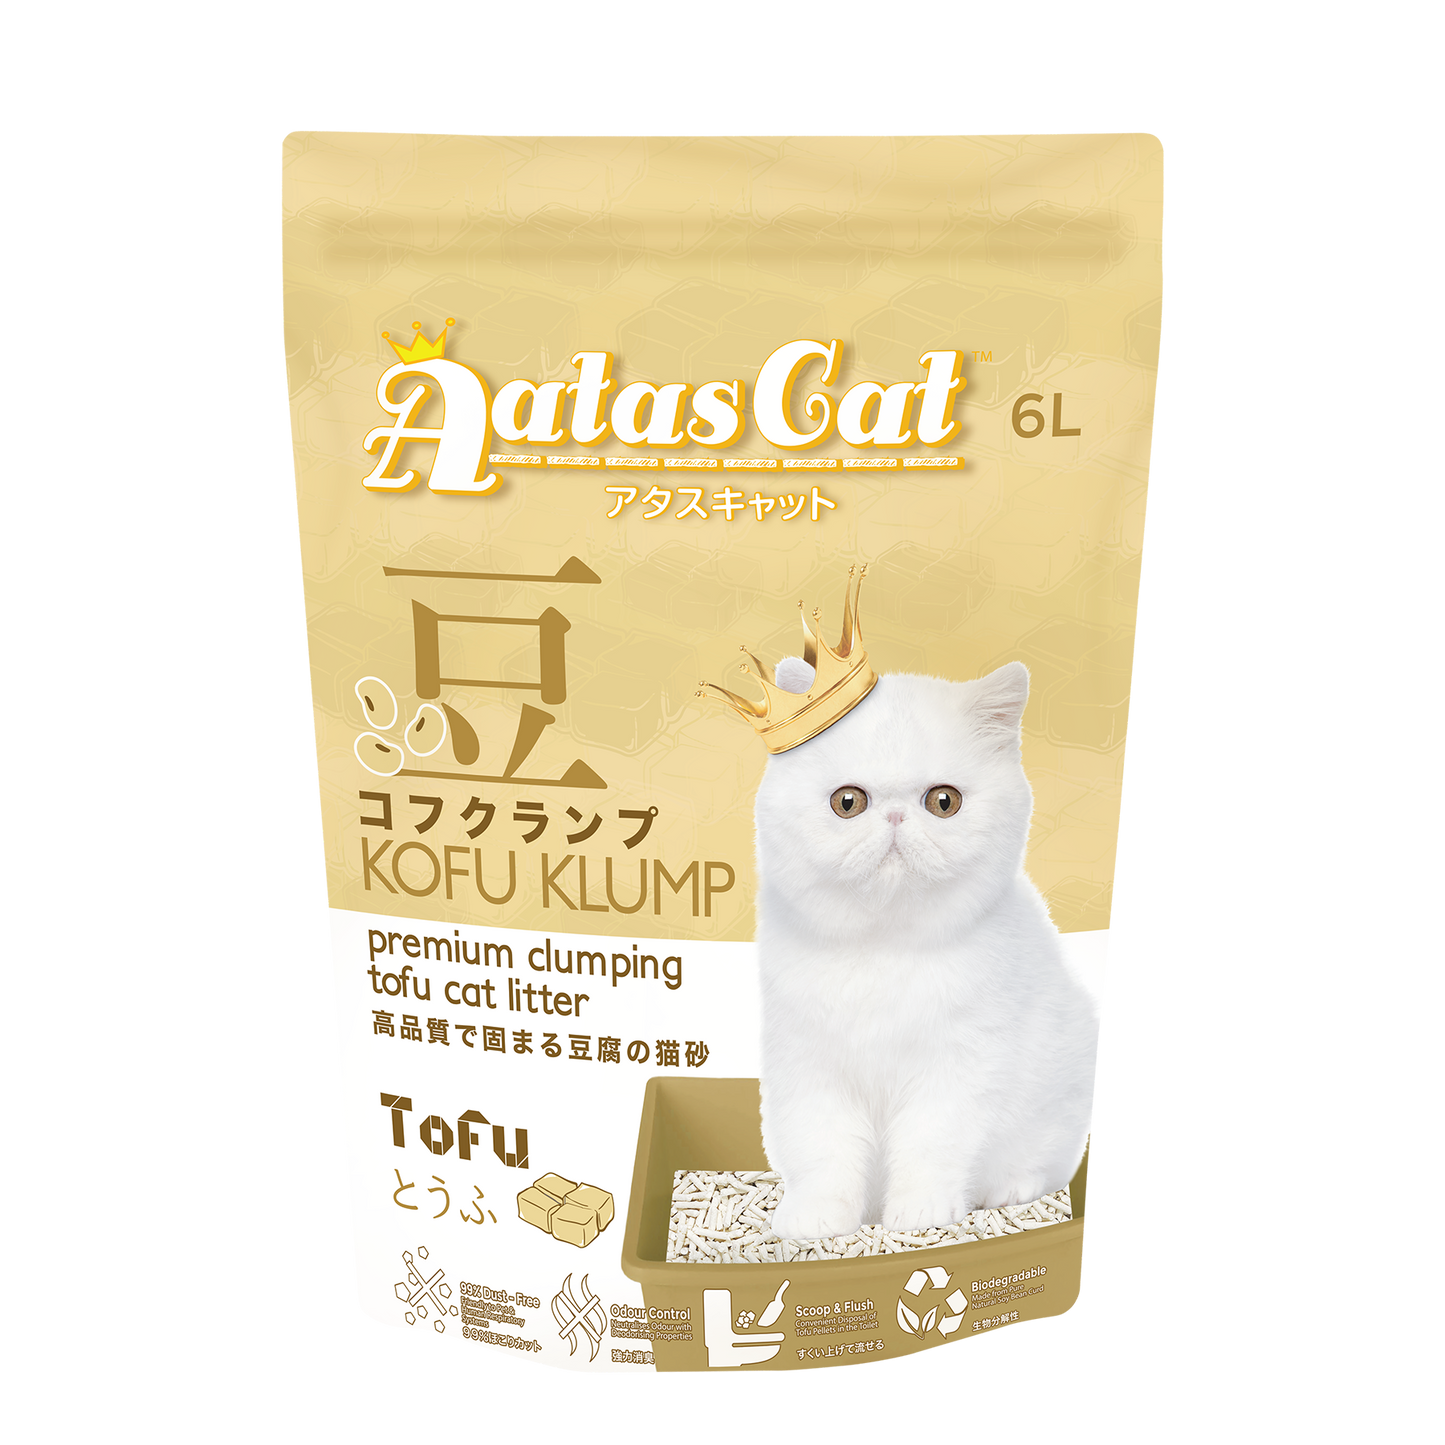 Aatas Cat Kofu Klump Tofu Cat Litter Tofu 6L